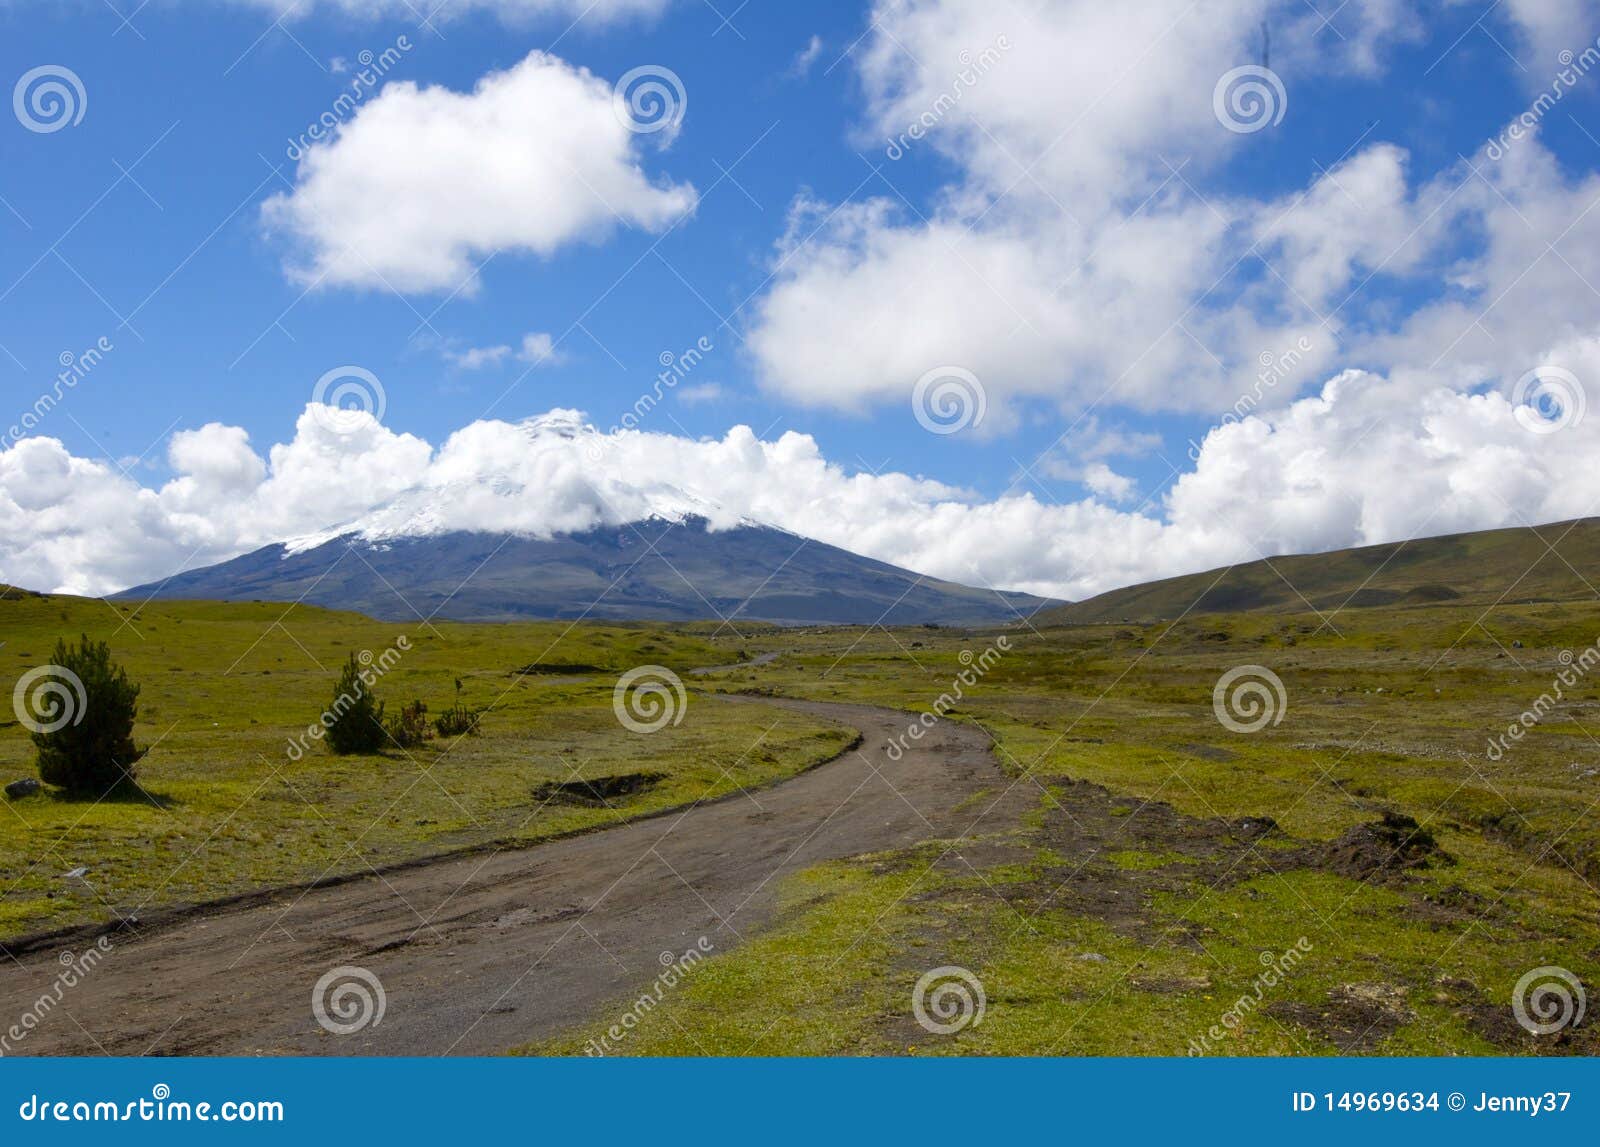 the road to cotopaxi volcano summit in ecuador